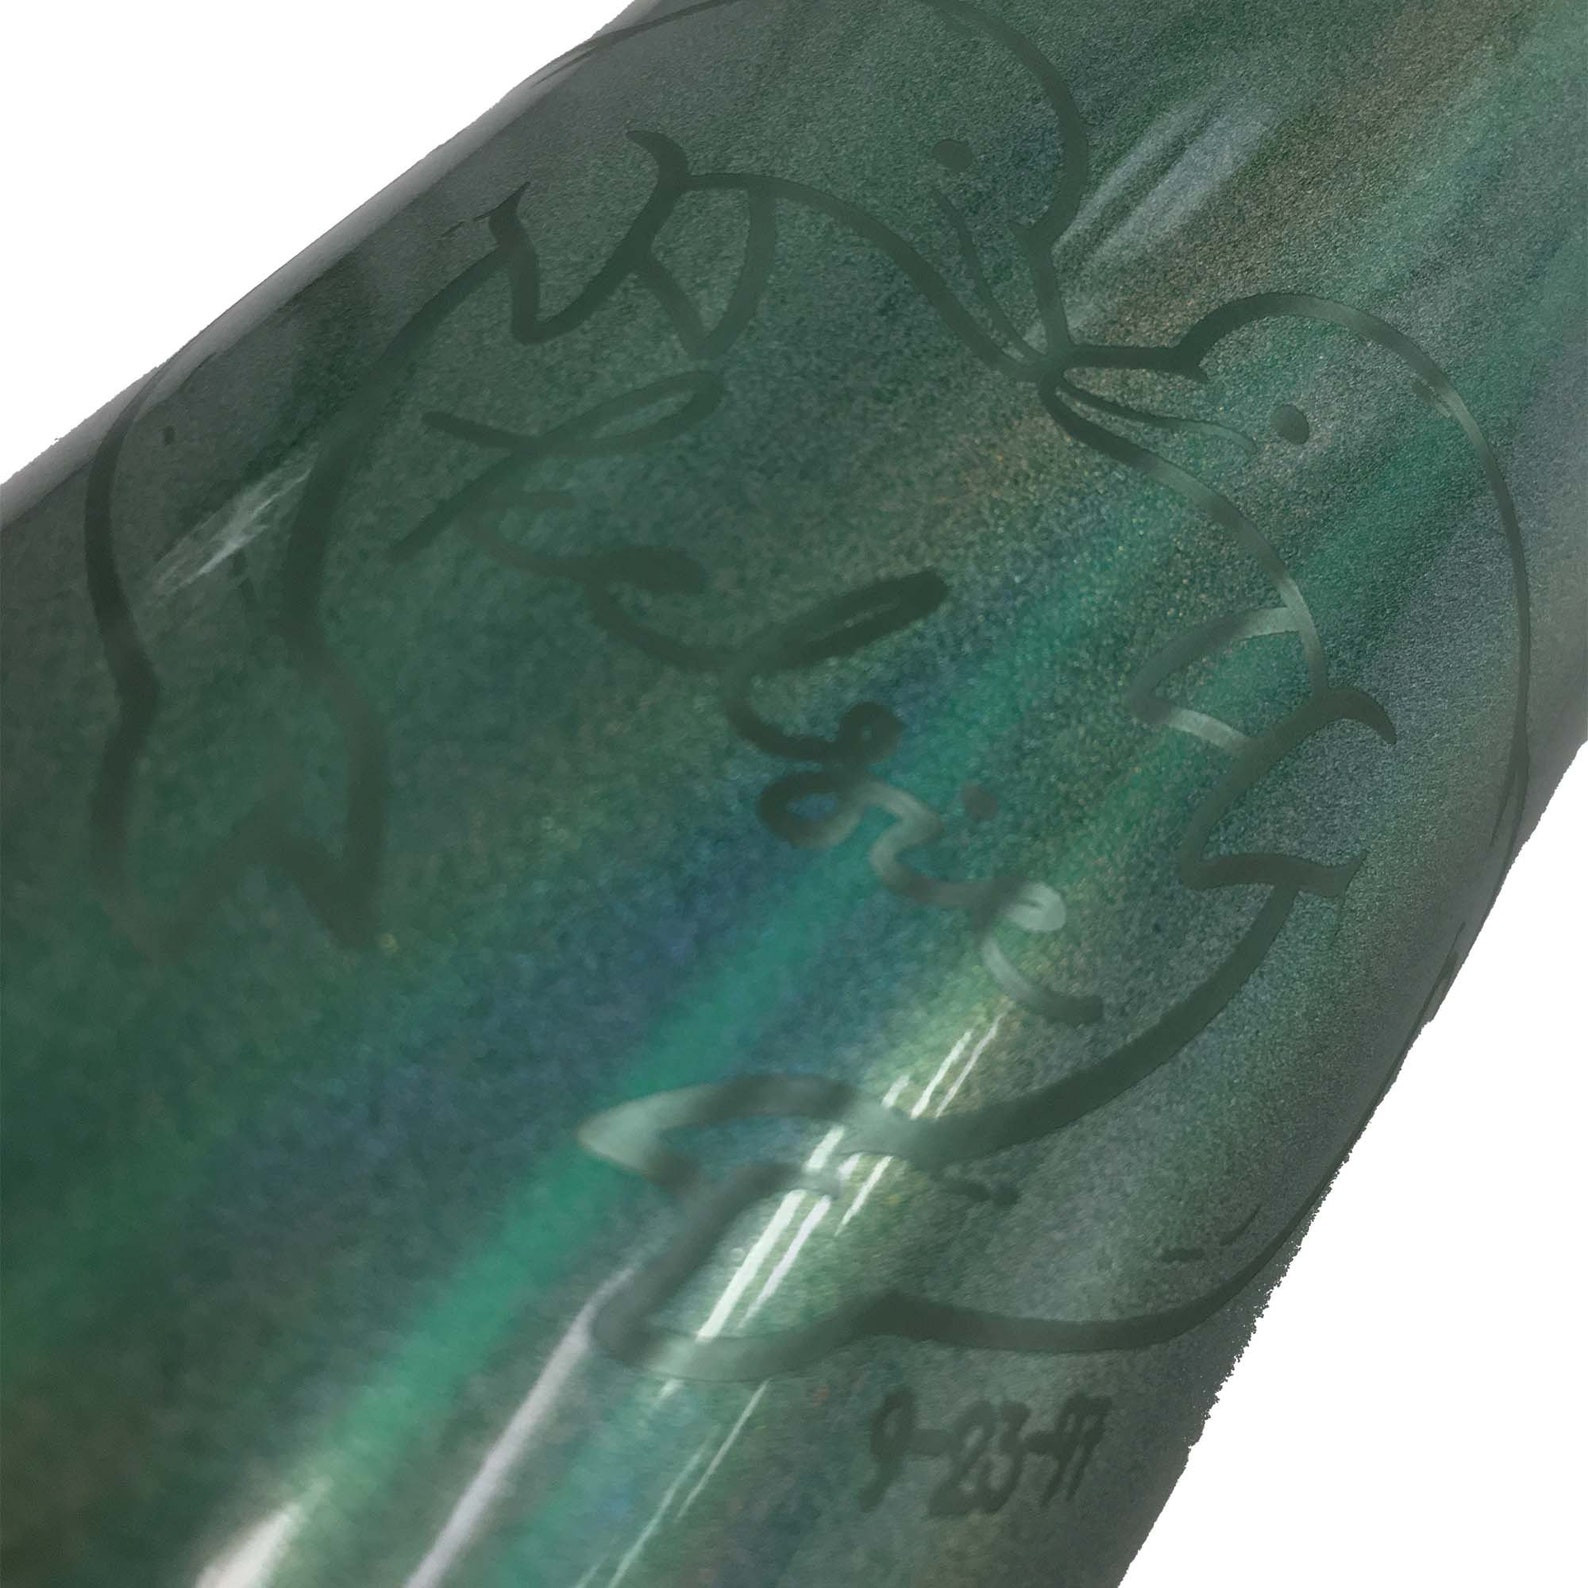 RTIC Bottle 20 oz – Custom Branding